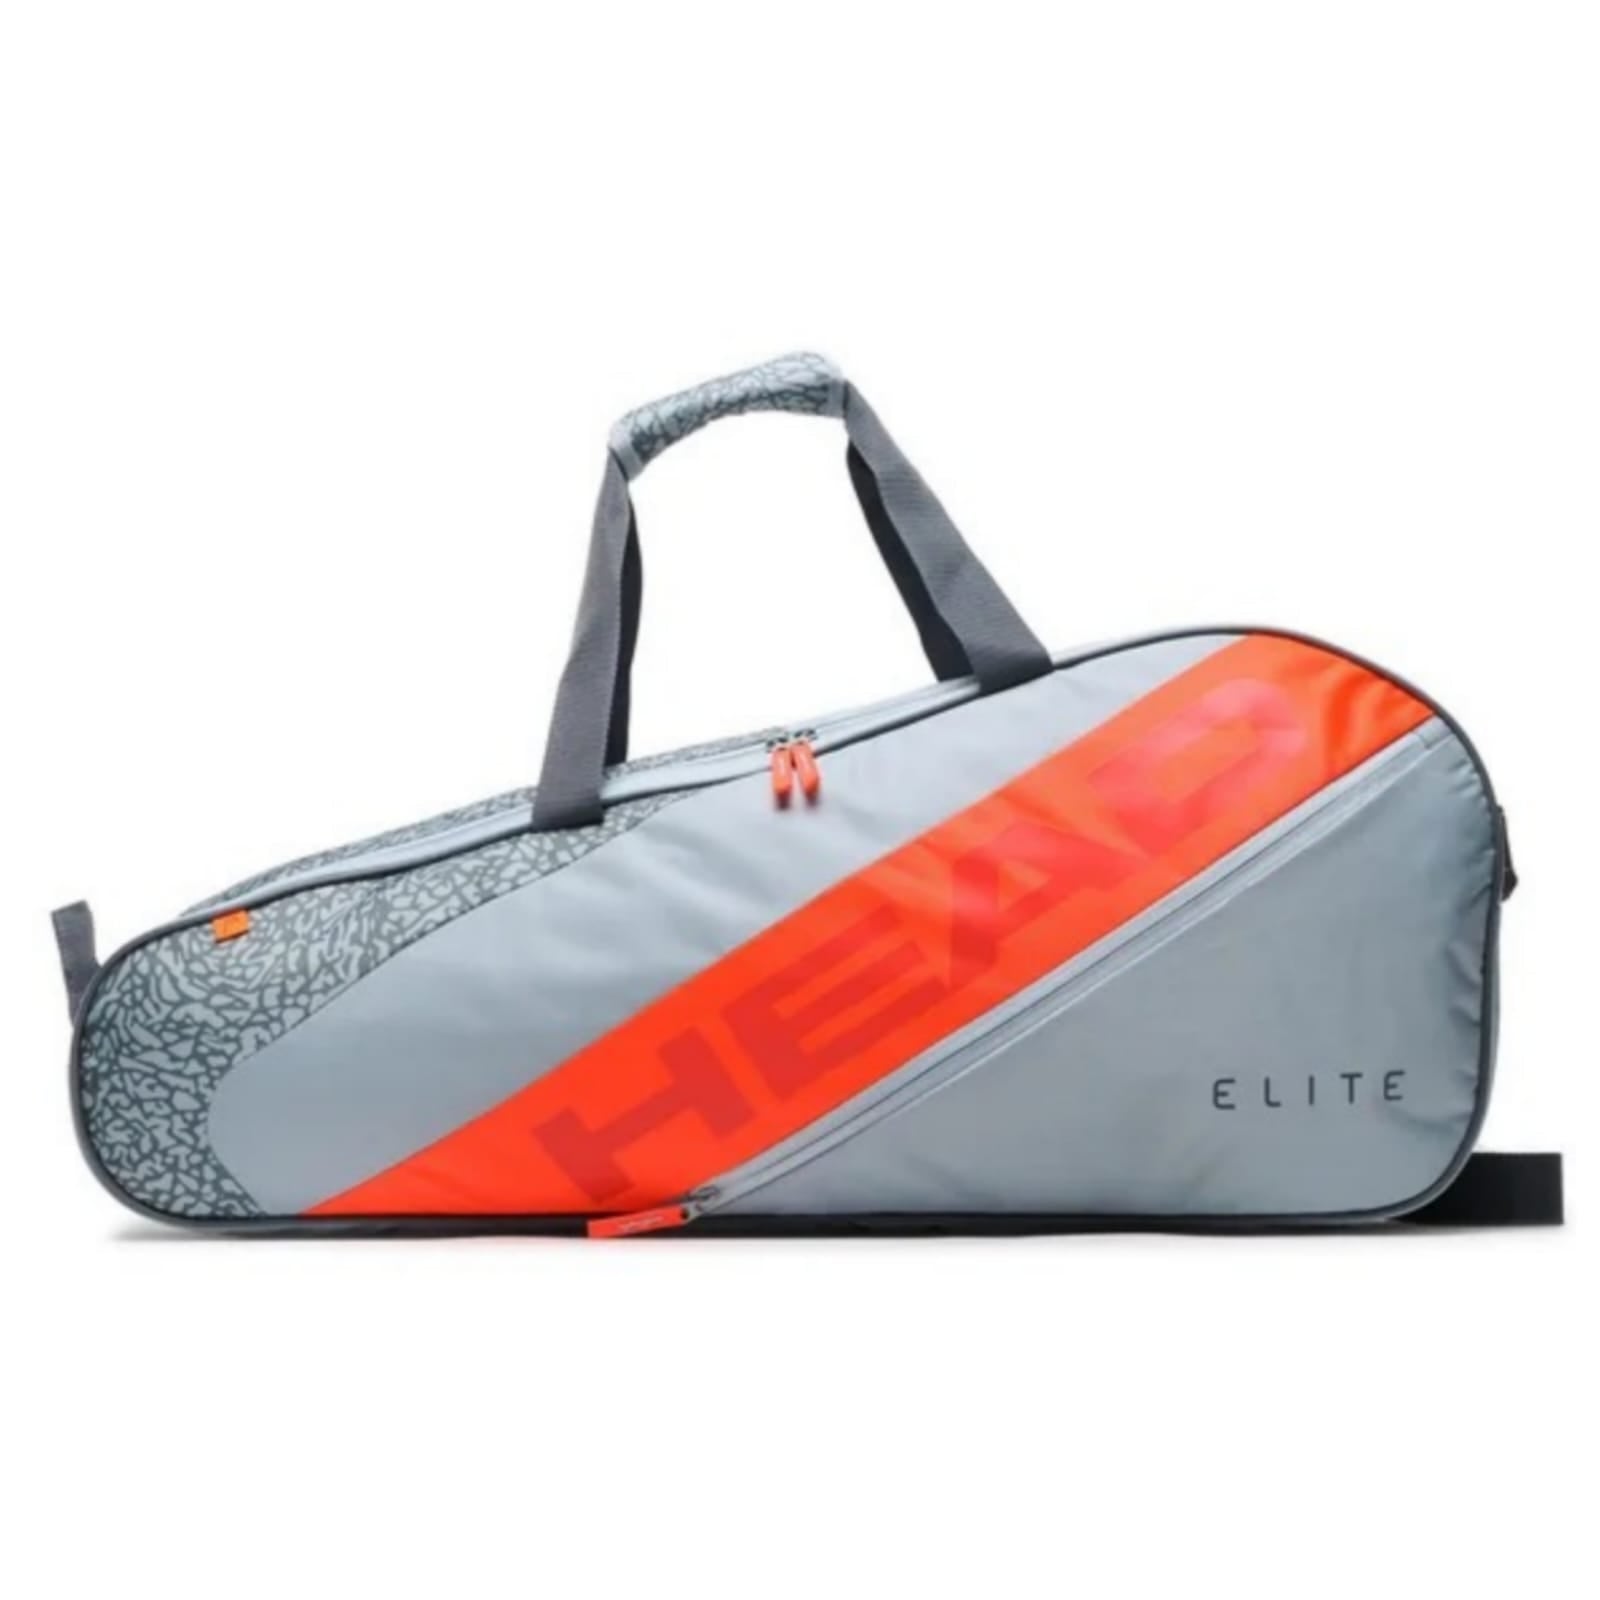 Maleta Head Elite x6 (Grey/Orange)